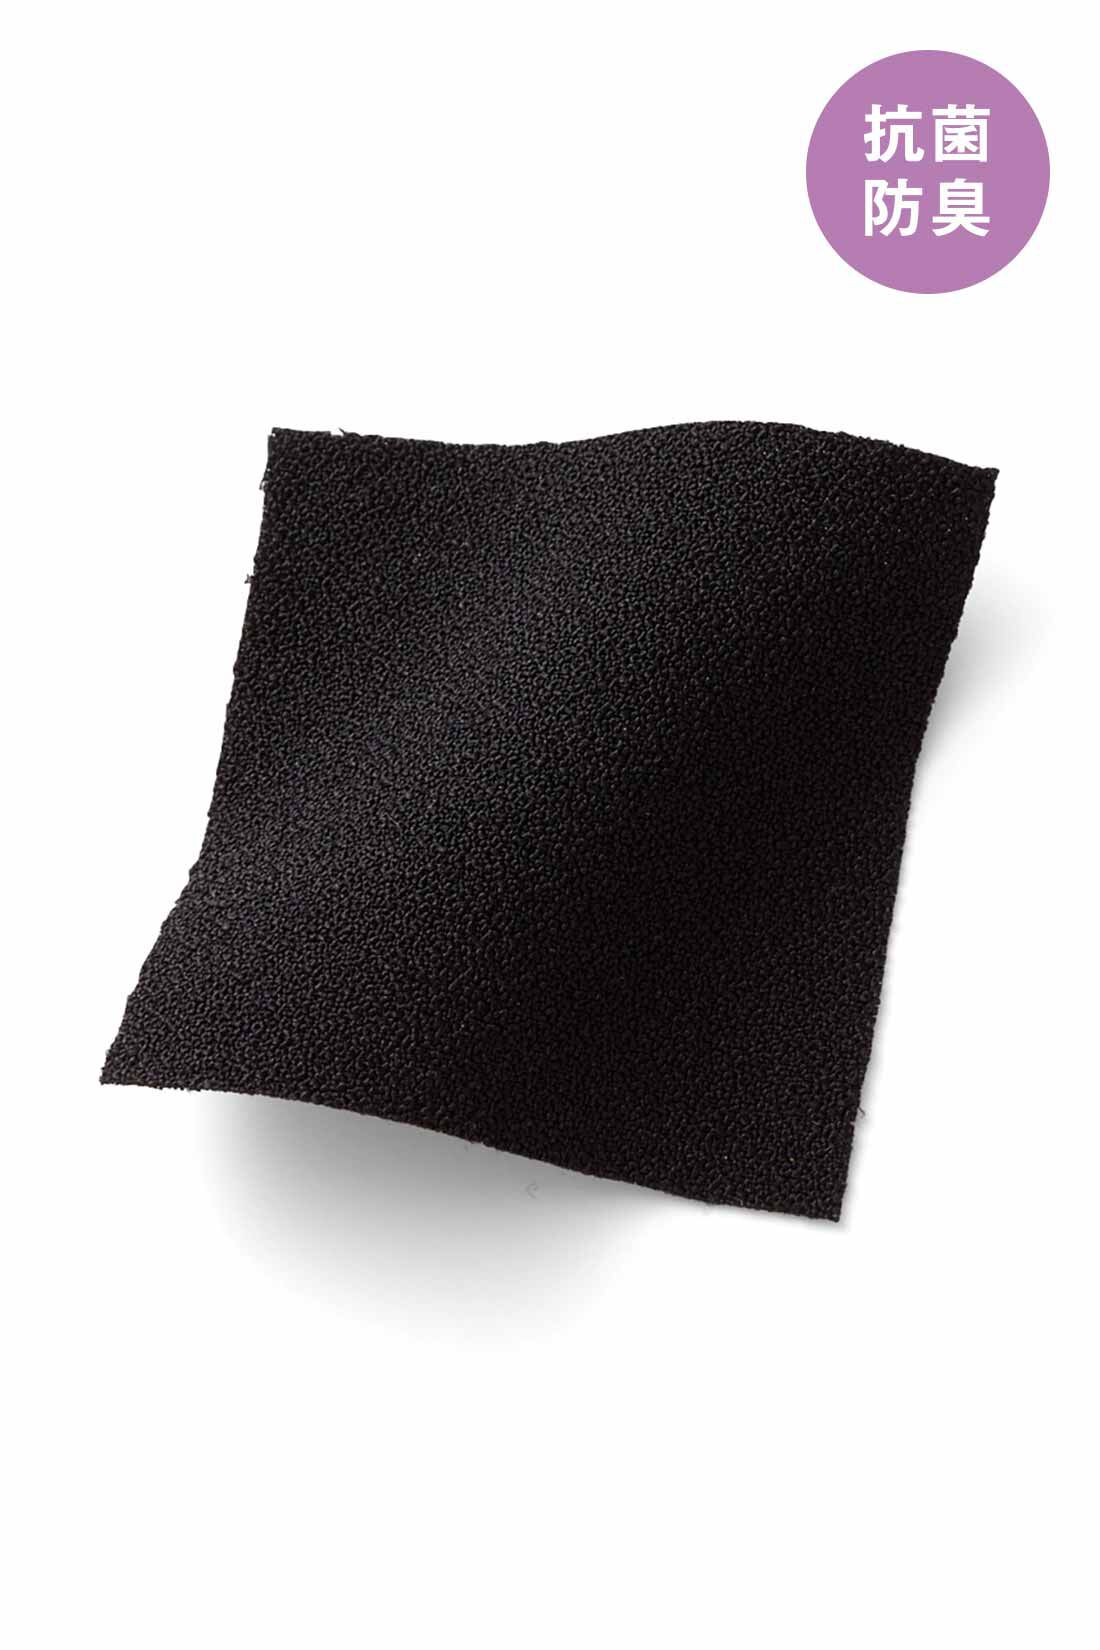 IEDIT|IEDIT[イディット]　抗菌防臭がうれしい 後ろ姿も美しいバックプリーツトップス〈ブラック〉|きちんと感のある上品な布はく素材なのに伸びやかな着心地。 ※お届けするカラーとは異なります。